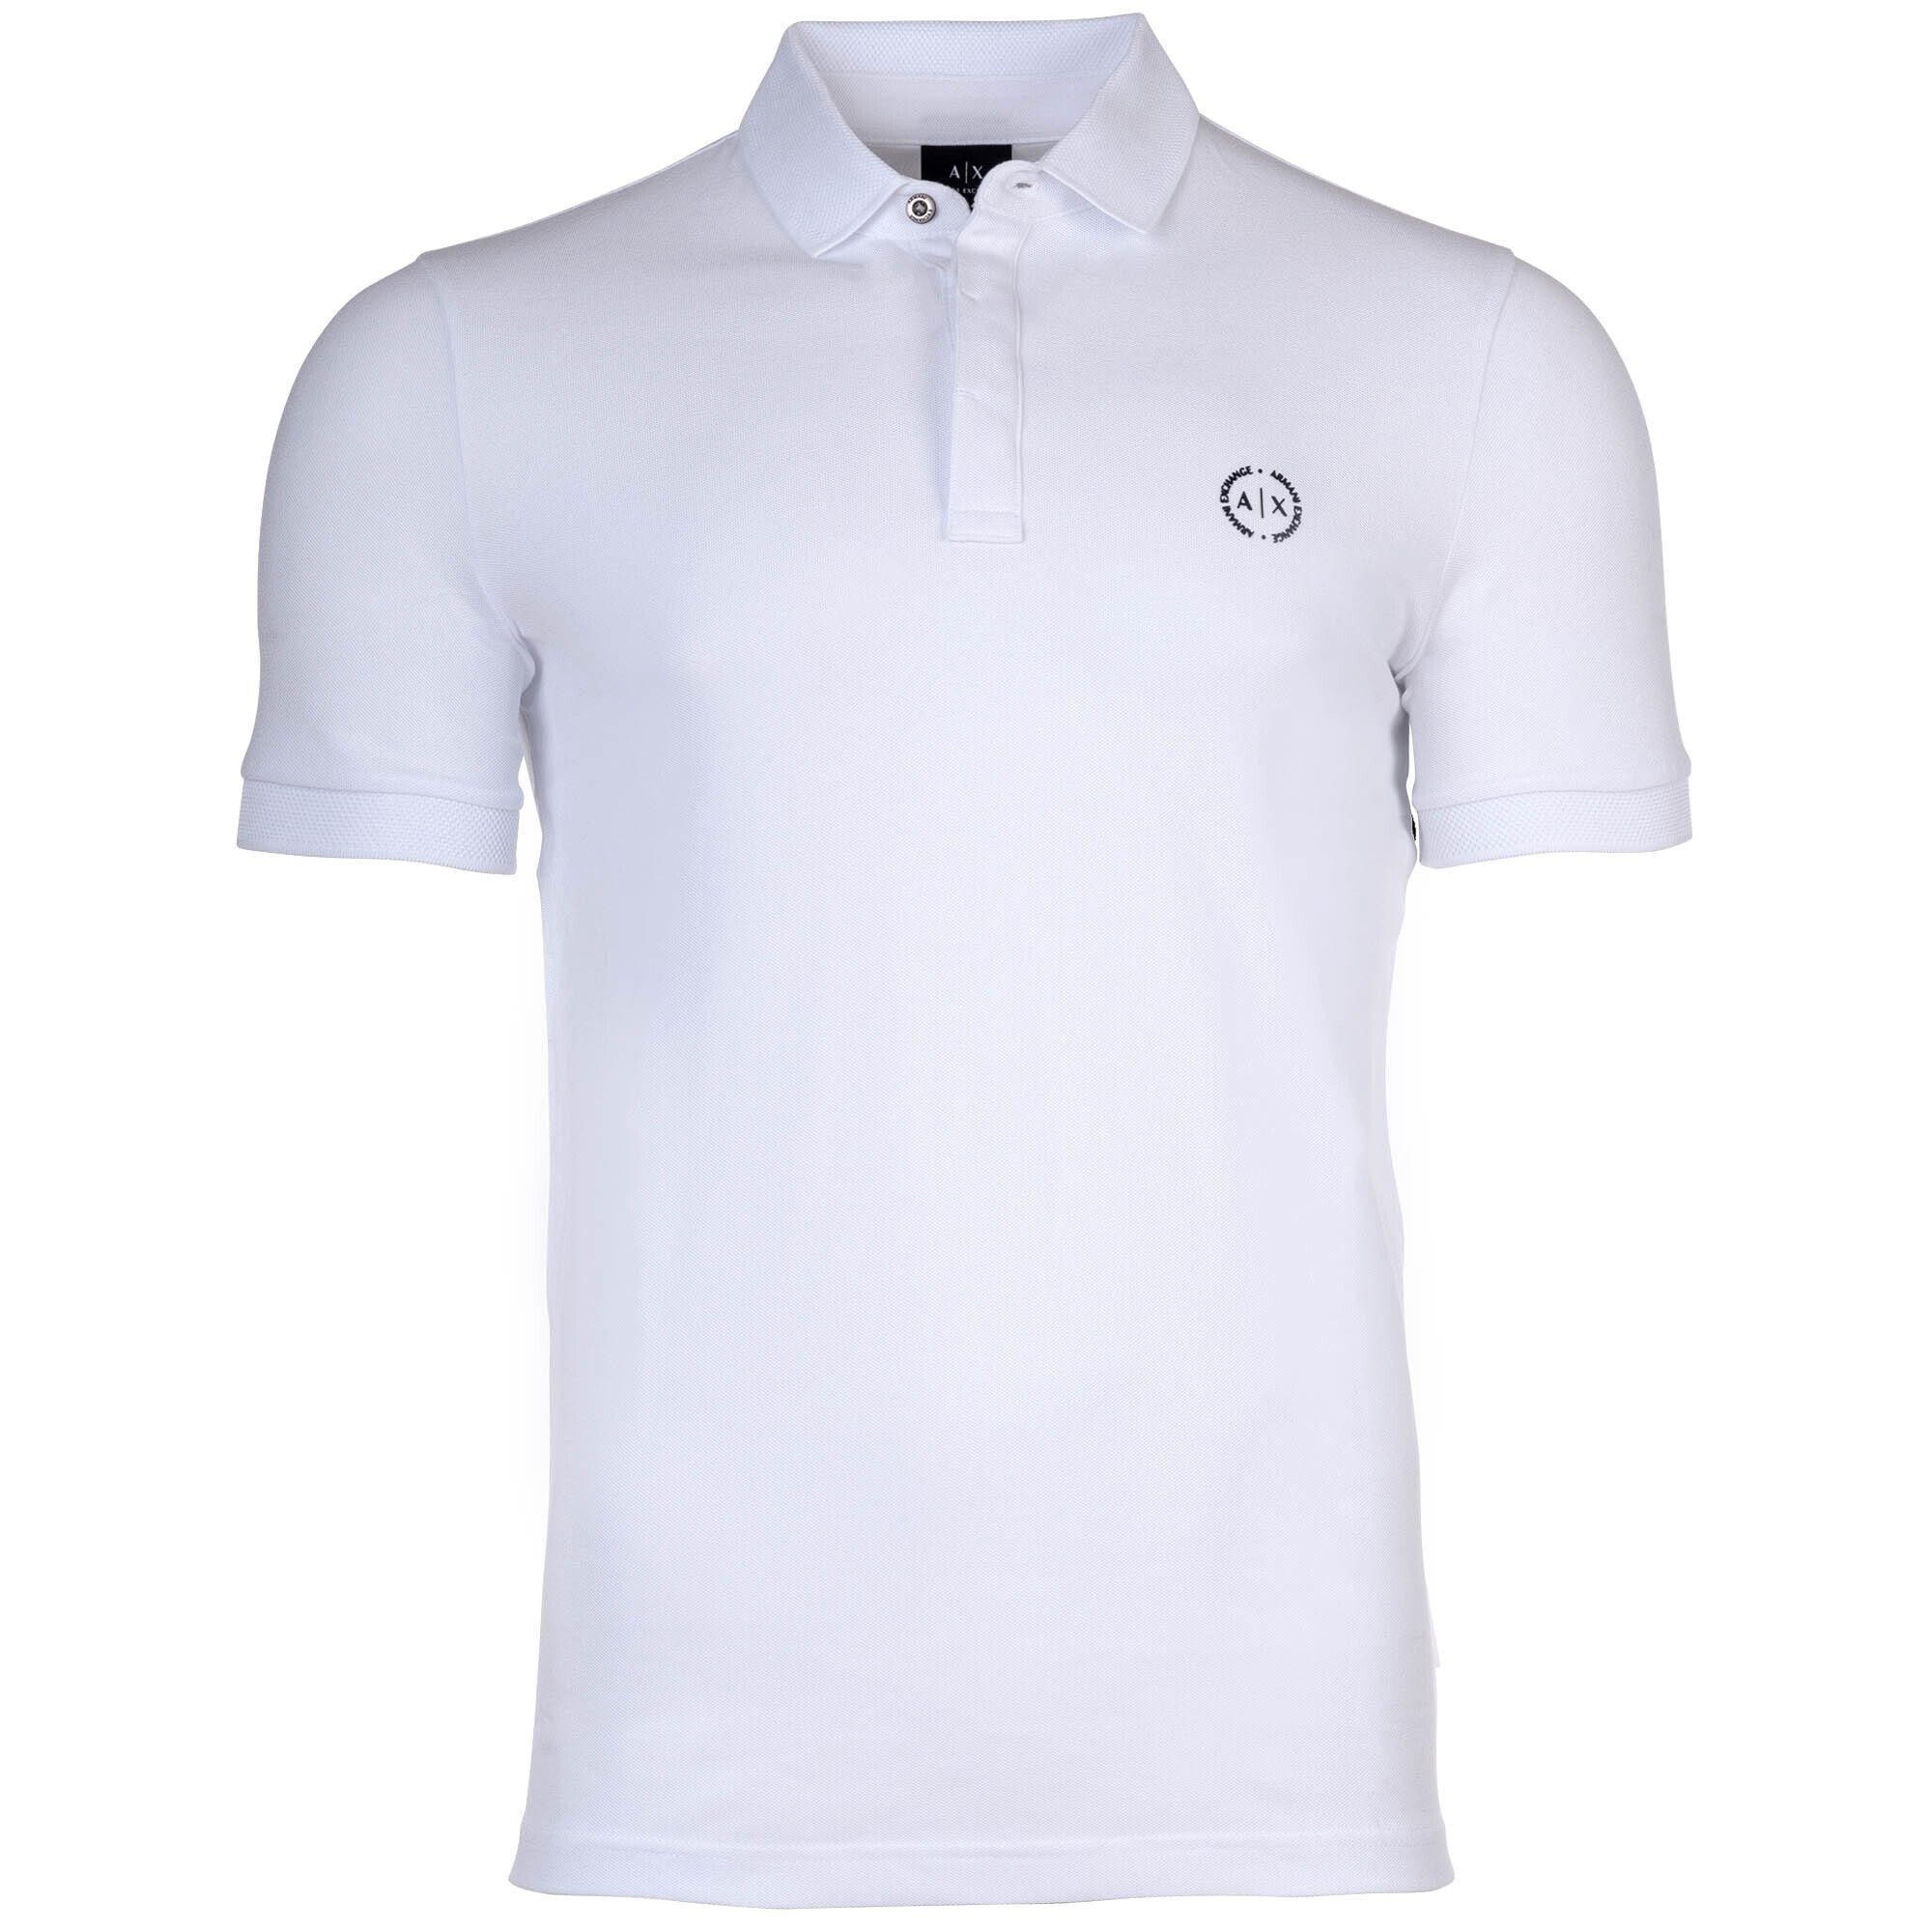 ARMANI EXCHANGE Poloshirt Weiß fit, Herren - Slim Cotton Poloshirt einfarbig